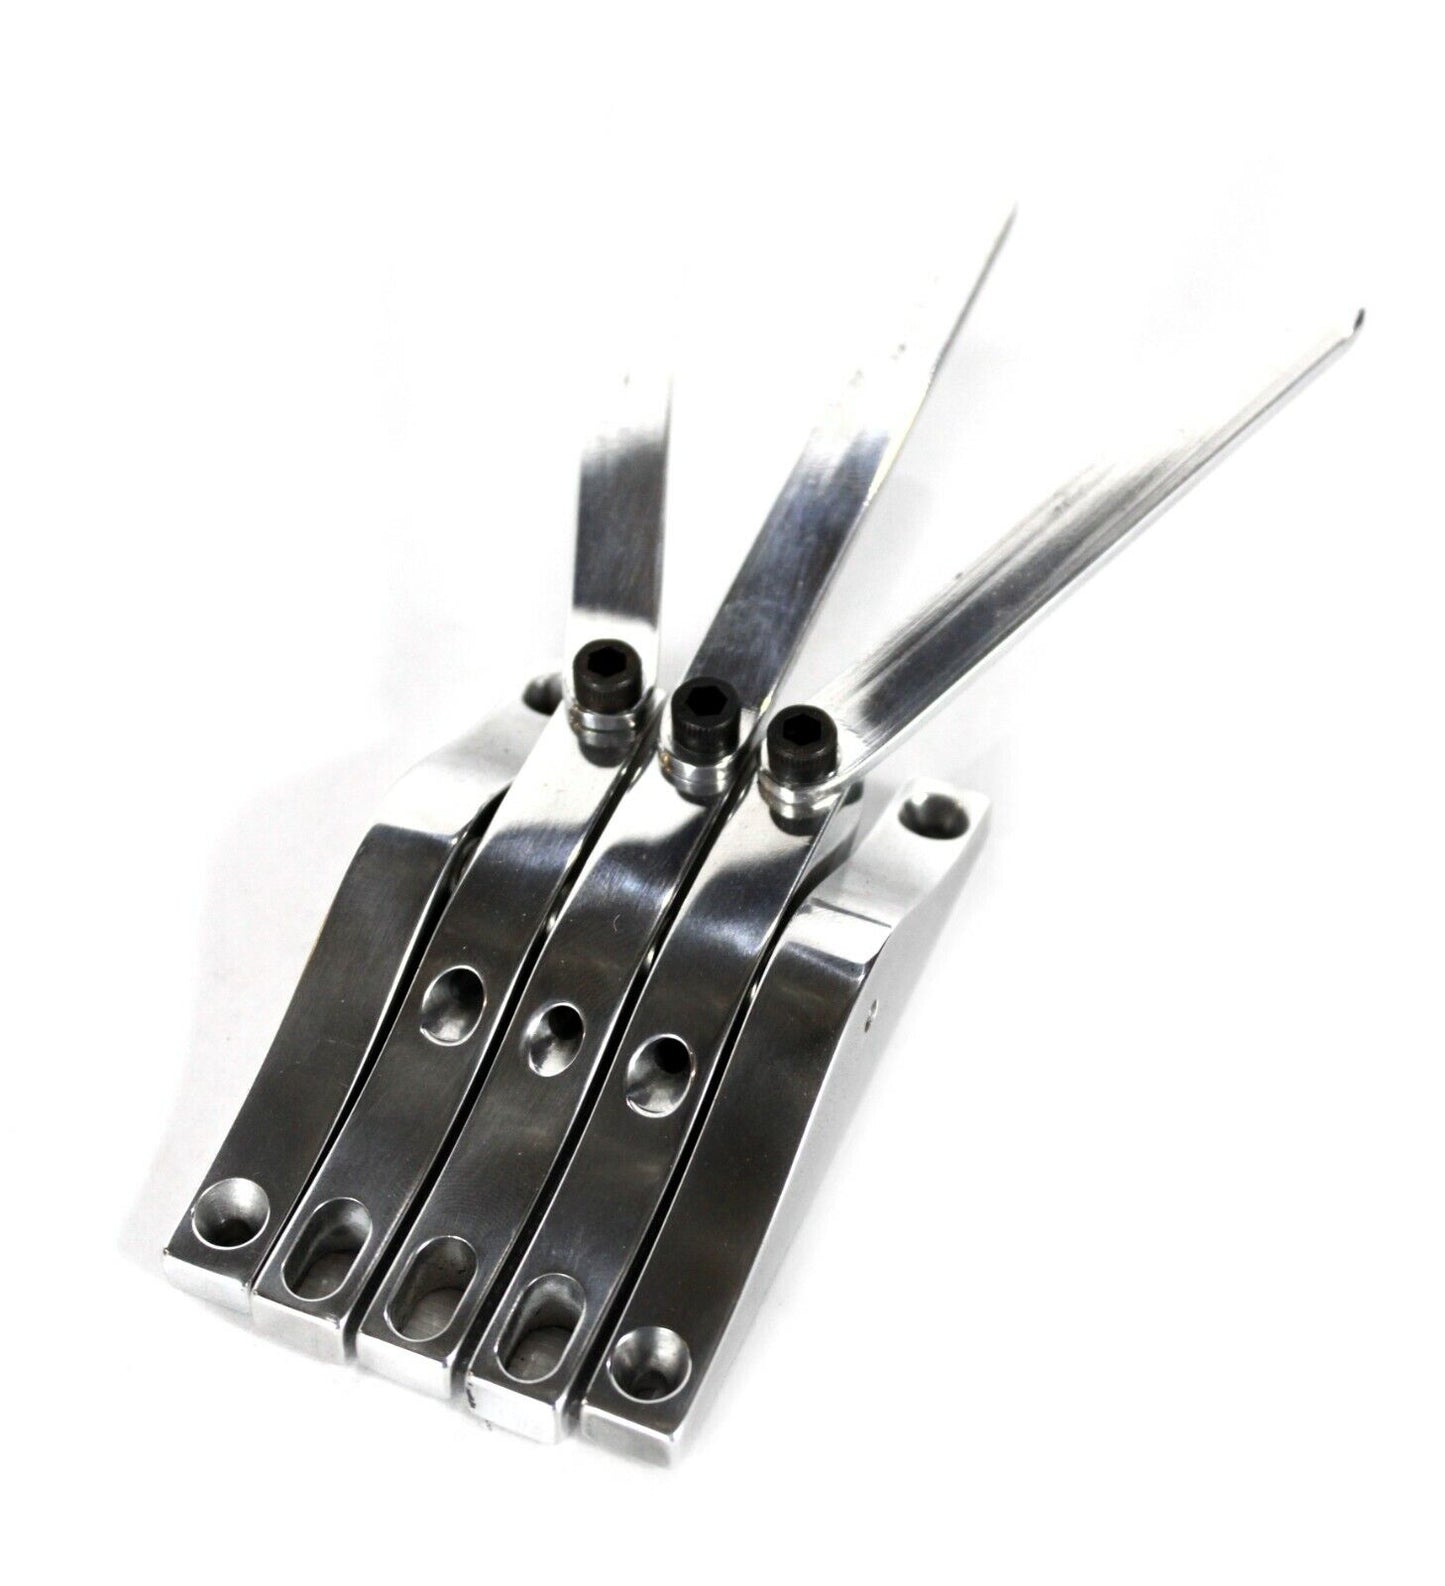 Peters 3 String G/B-bender, palm lever multi bender, lap steel guitar tele